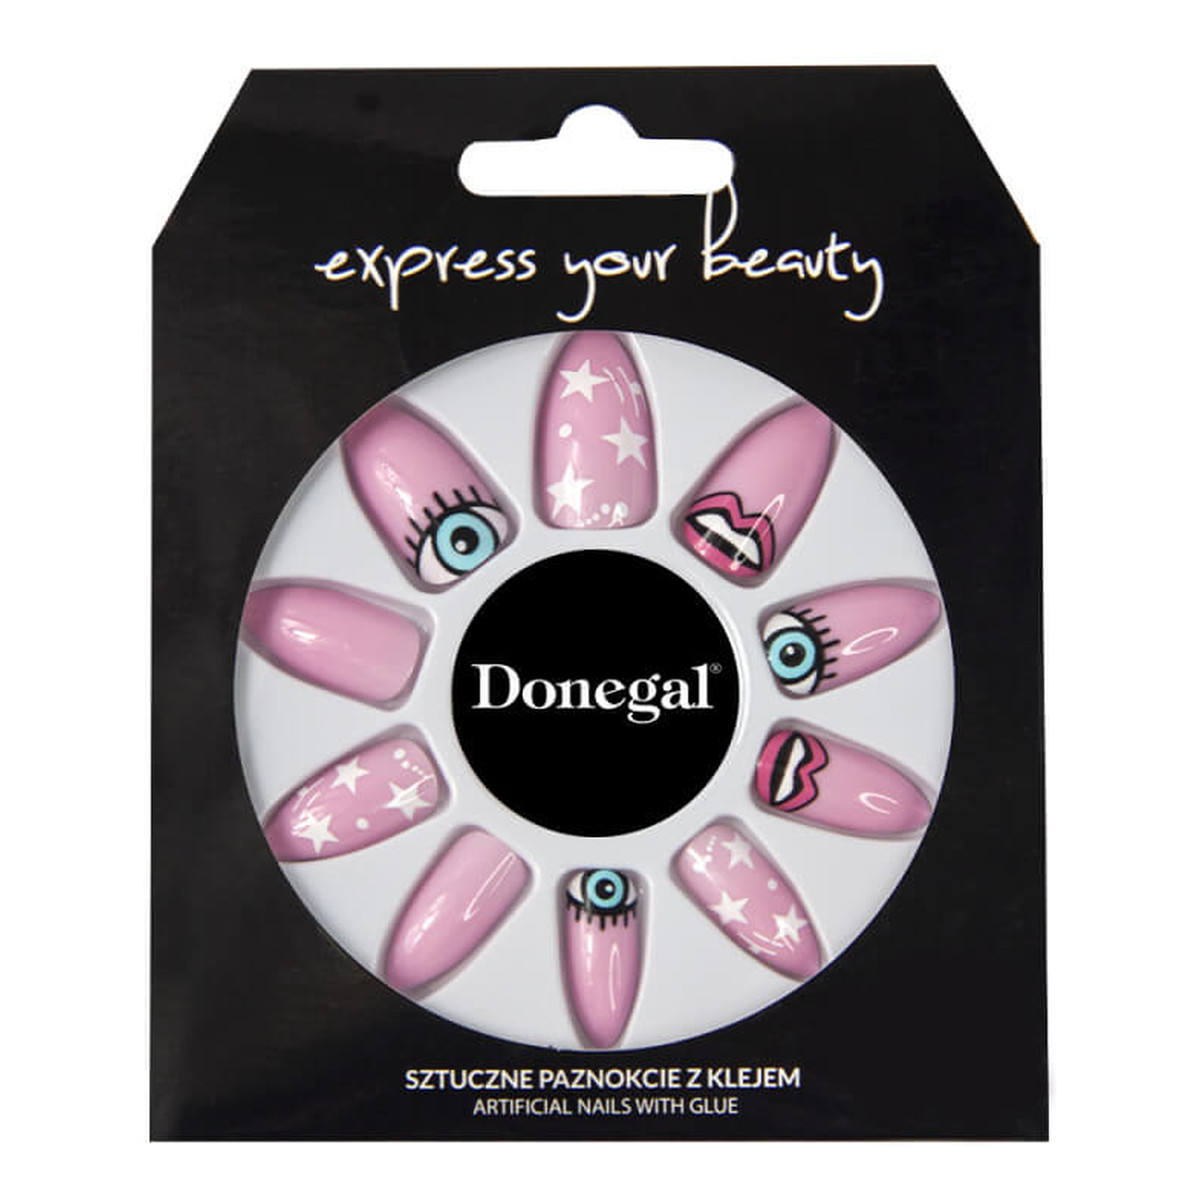 Donegal Express Your Beauty sztuczne paznokcie z klejem (3036) 24szt